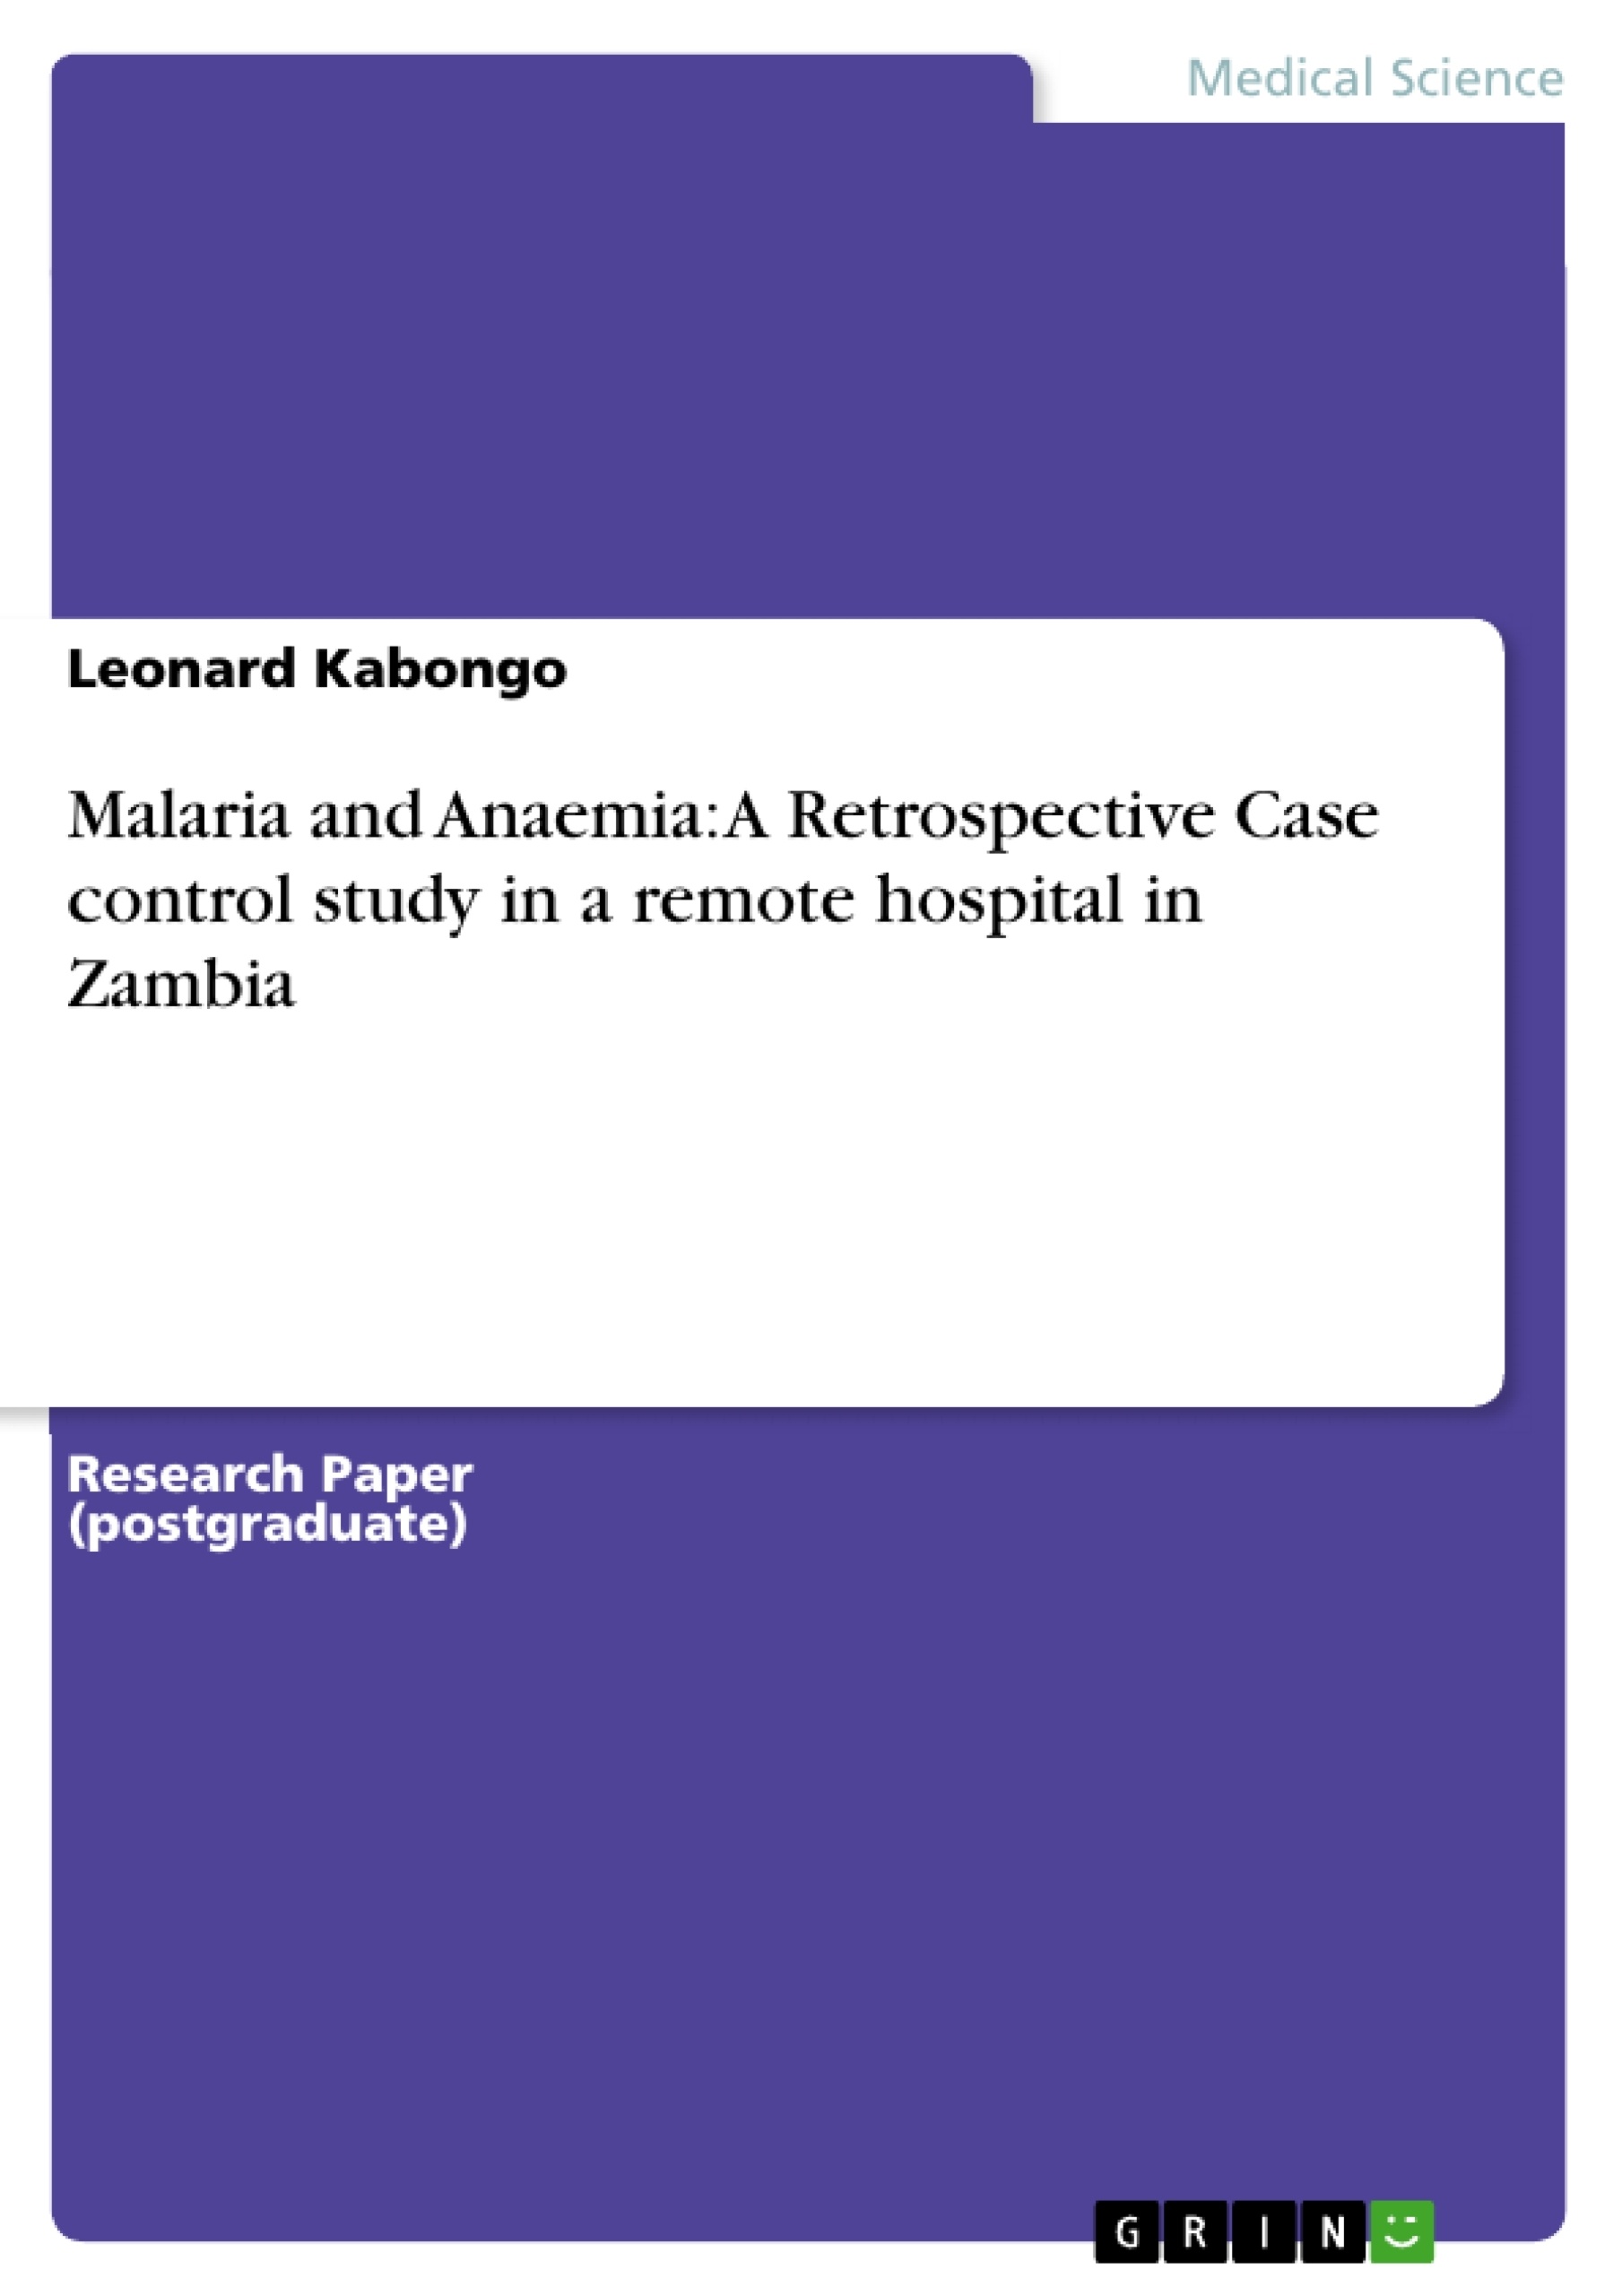 Título: Malaria and Anaemia: A Retrospective Case control study in a remote hospital in Zambia